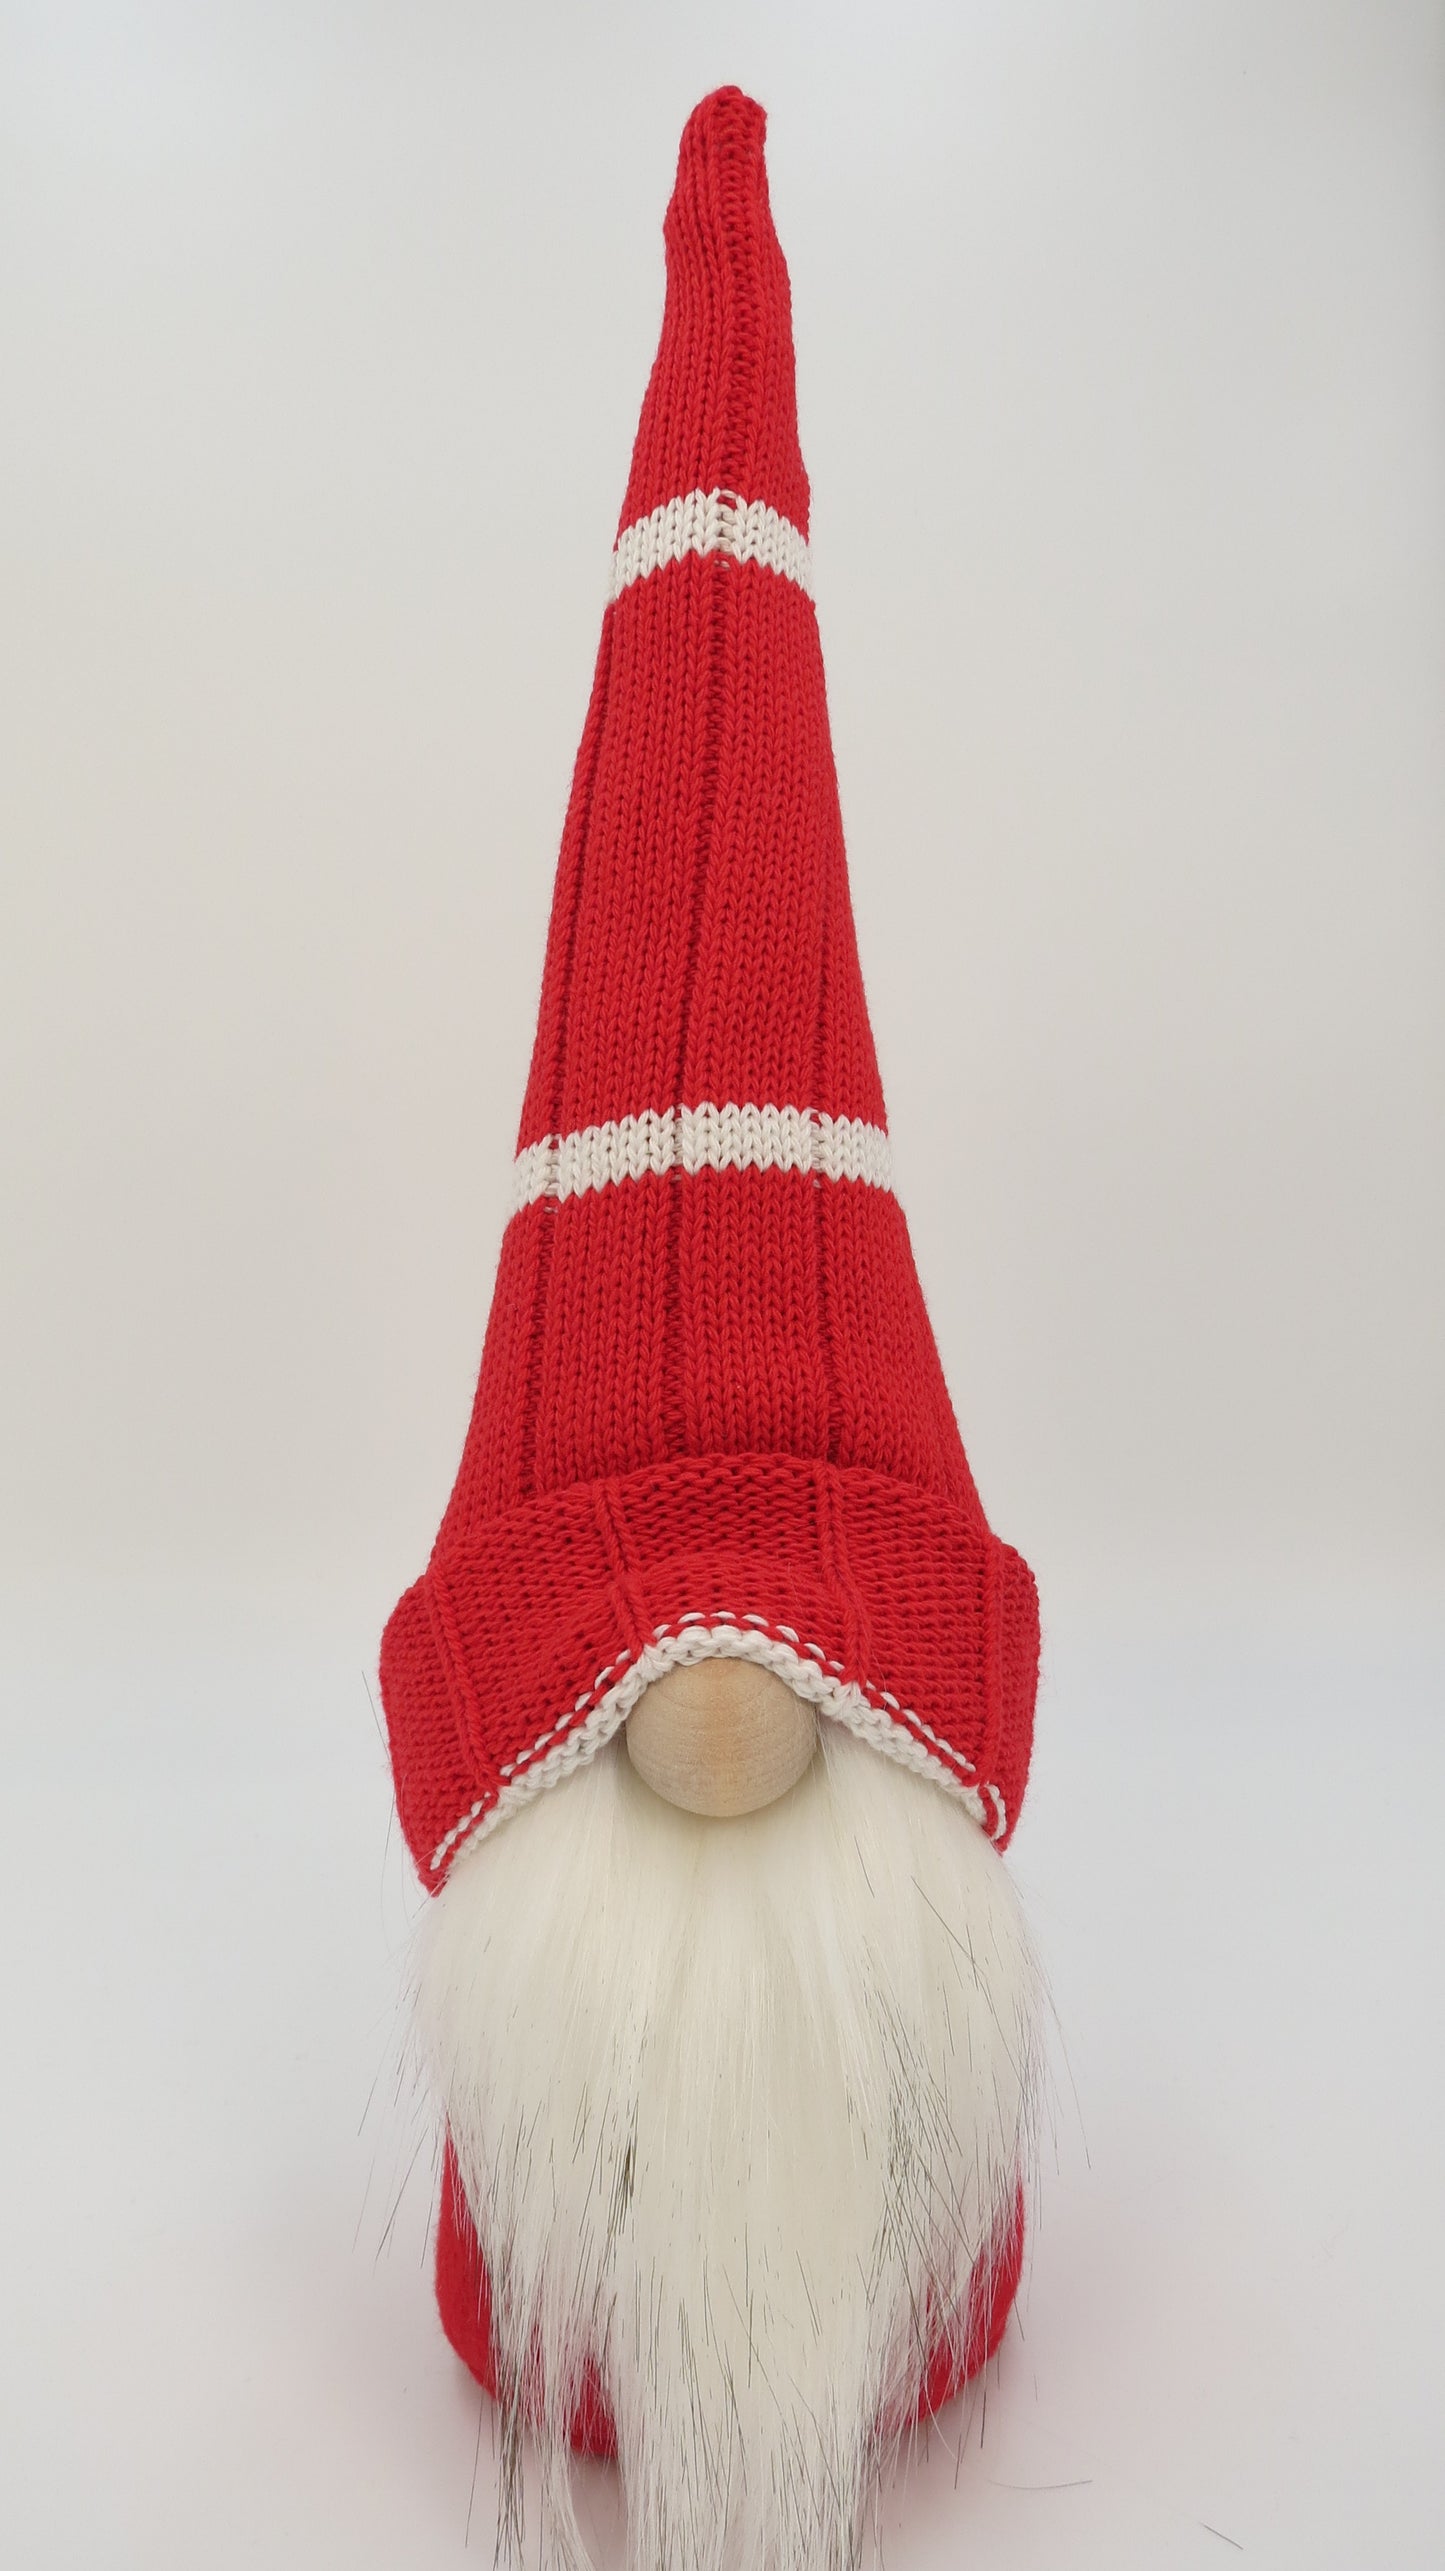 15" Medium Gnome (5352) - Red/White